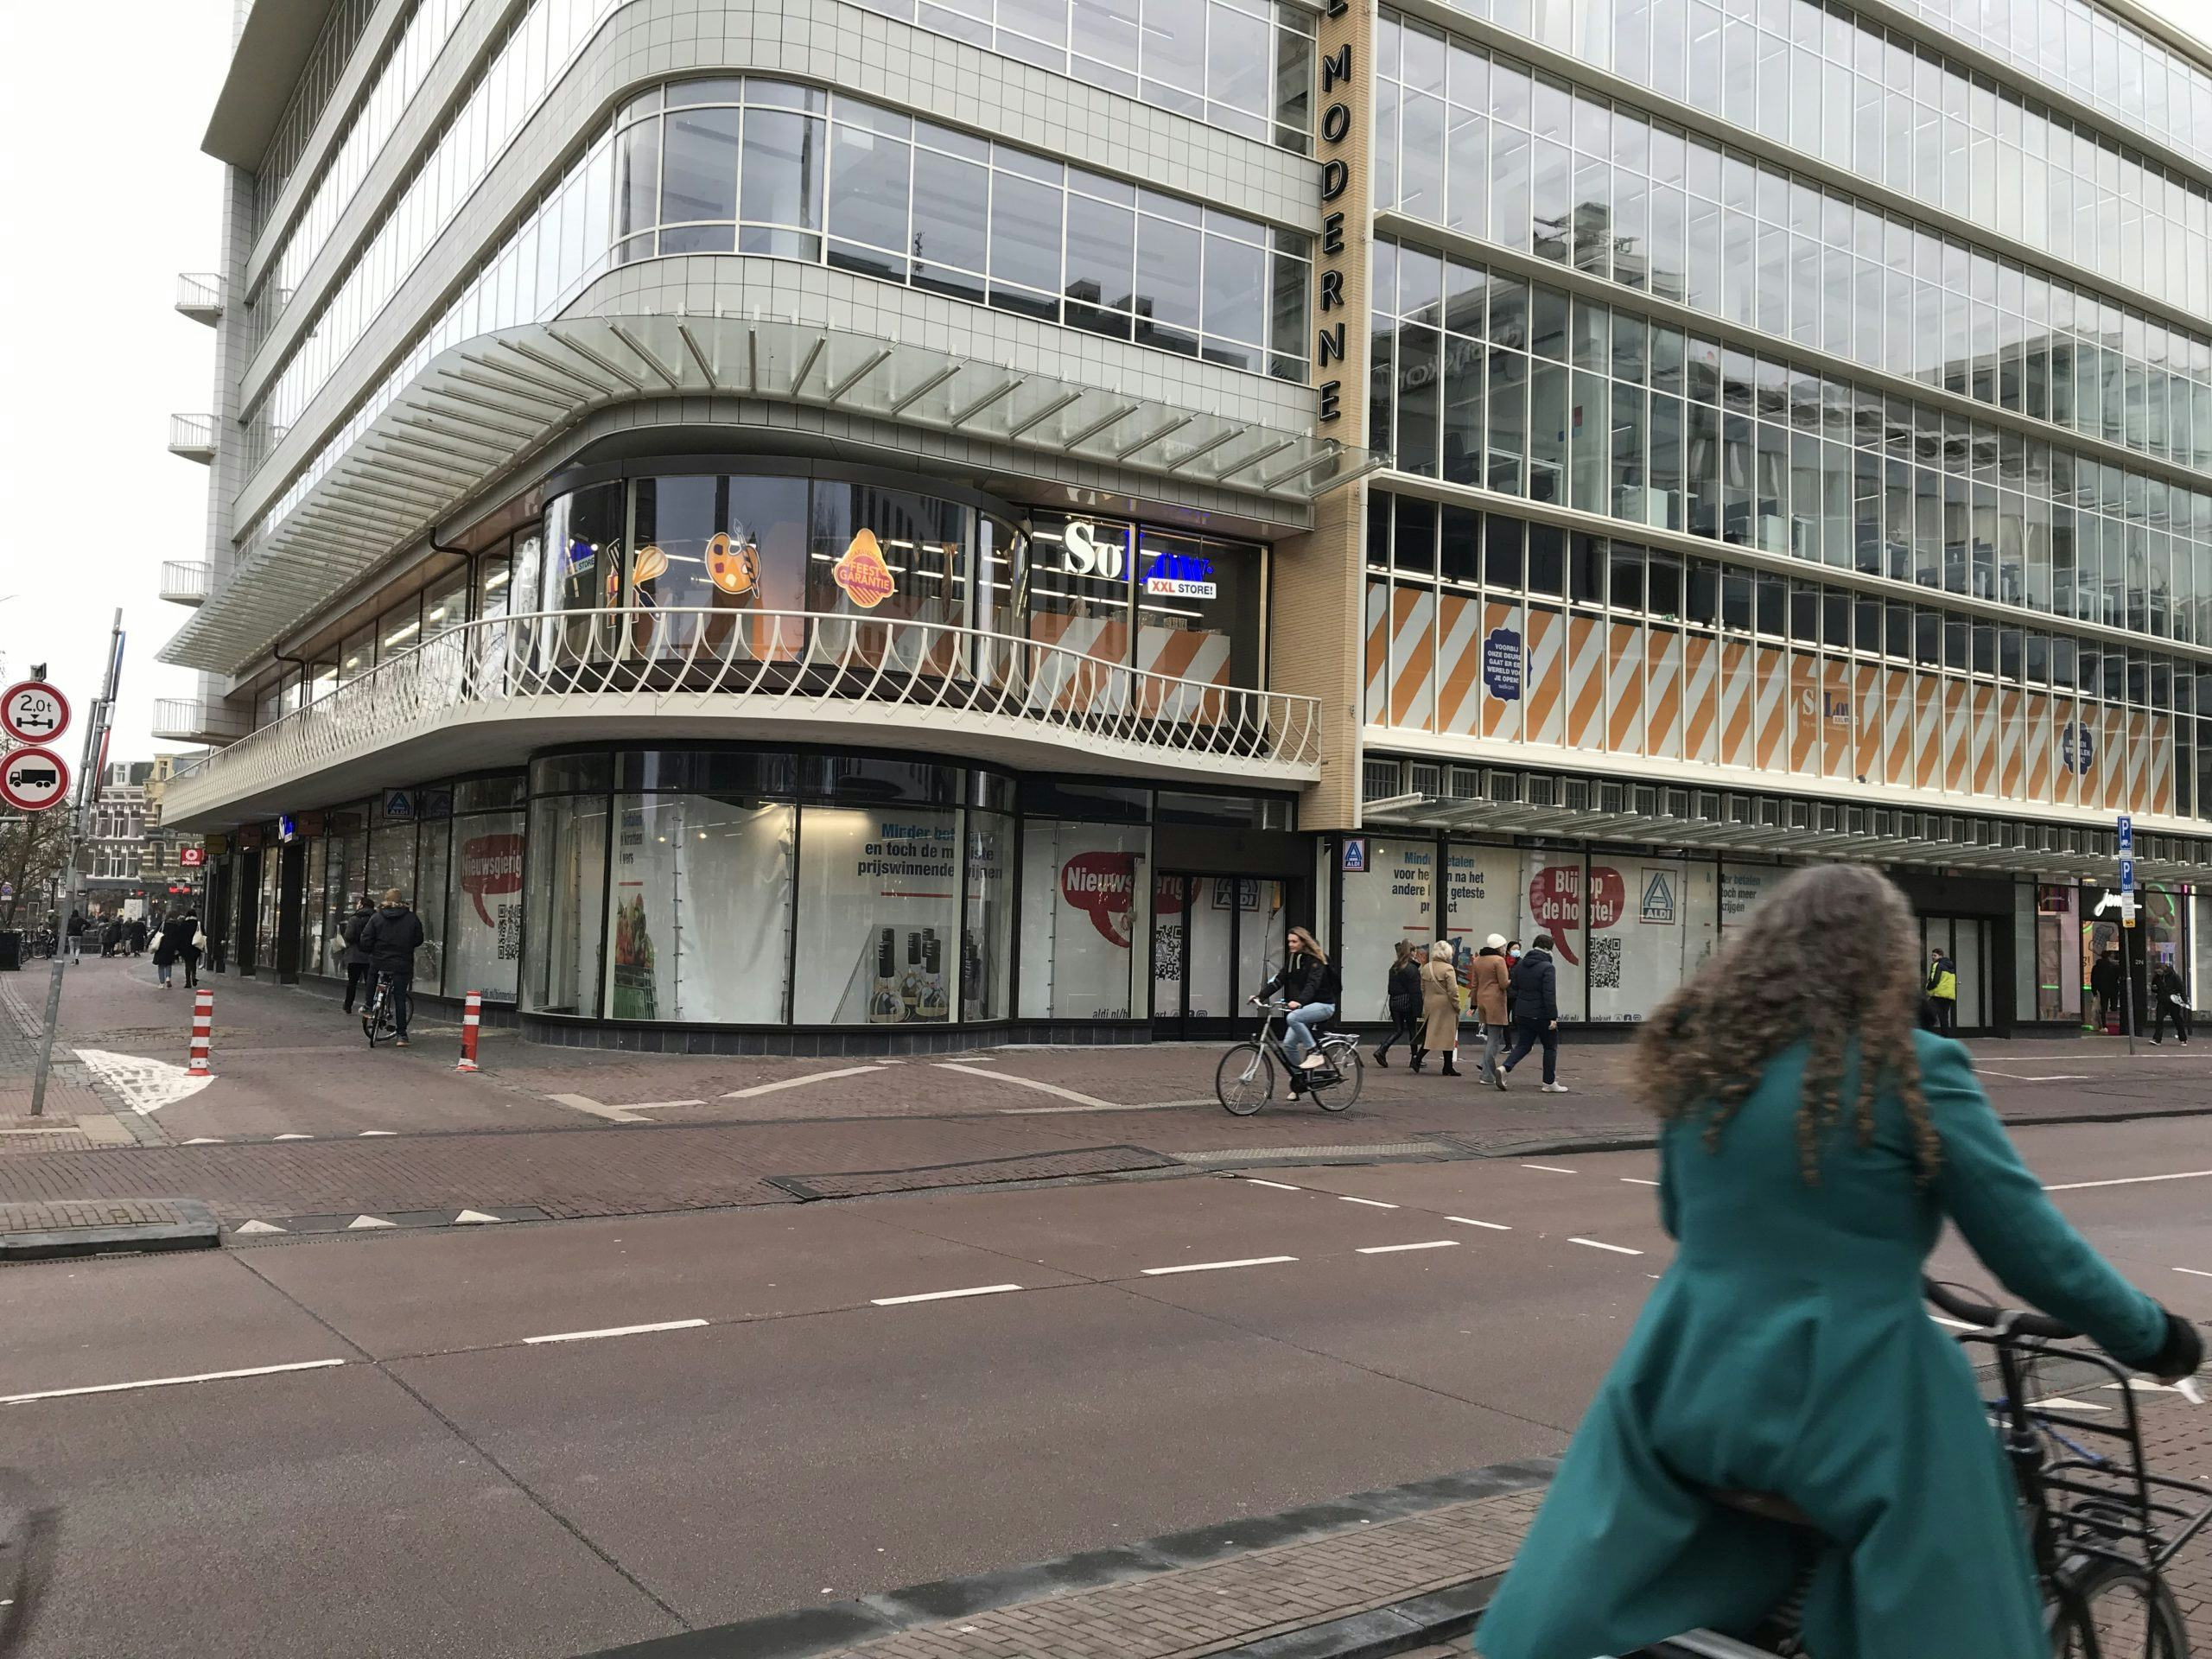 De kassaloze winkel van Aldi in hartje Utrecht. Foto: Distrifood